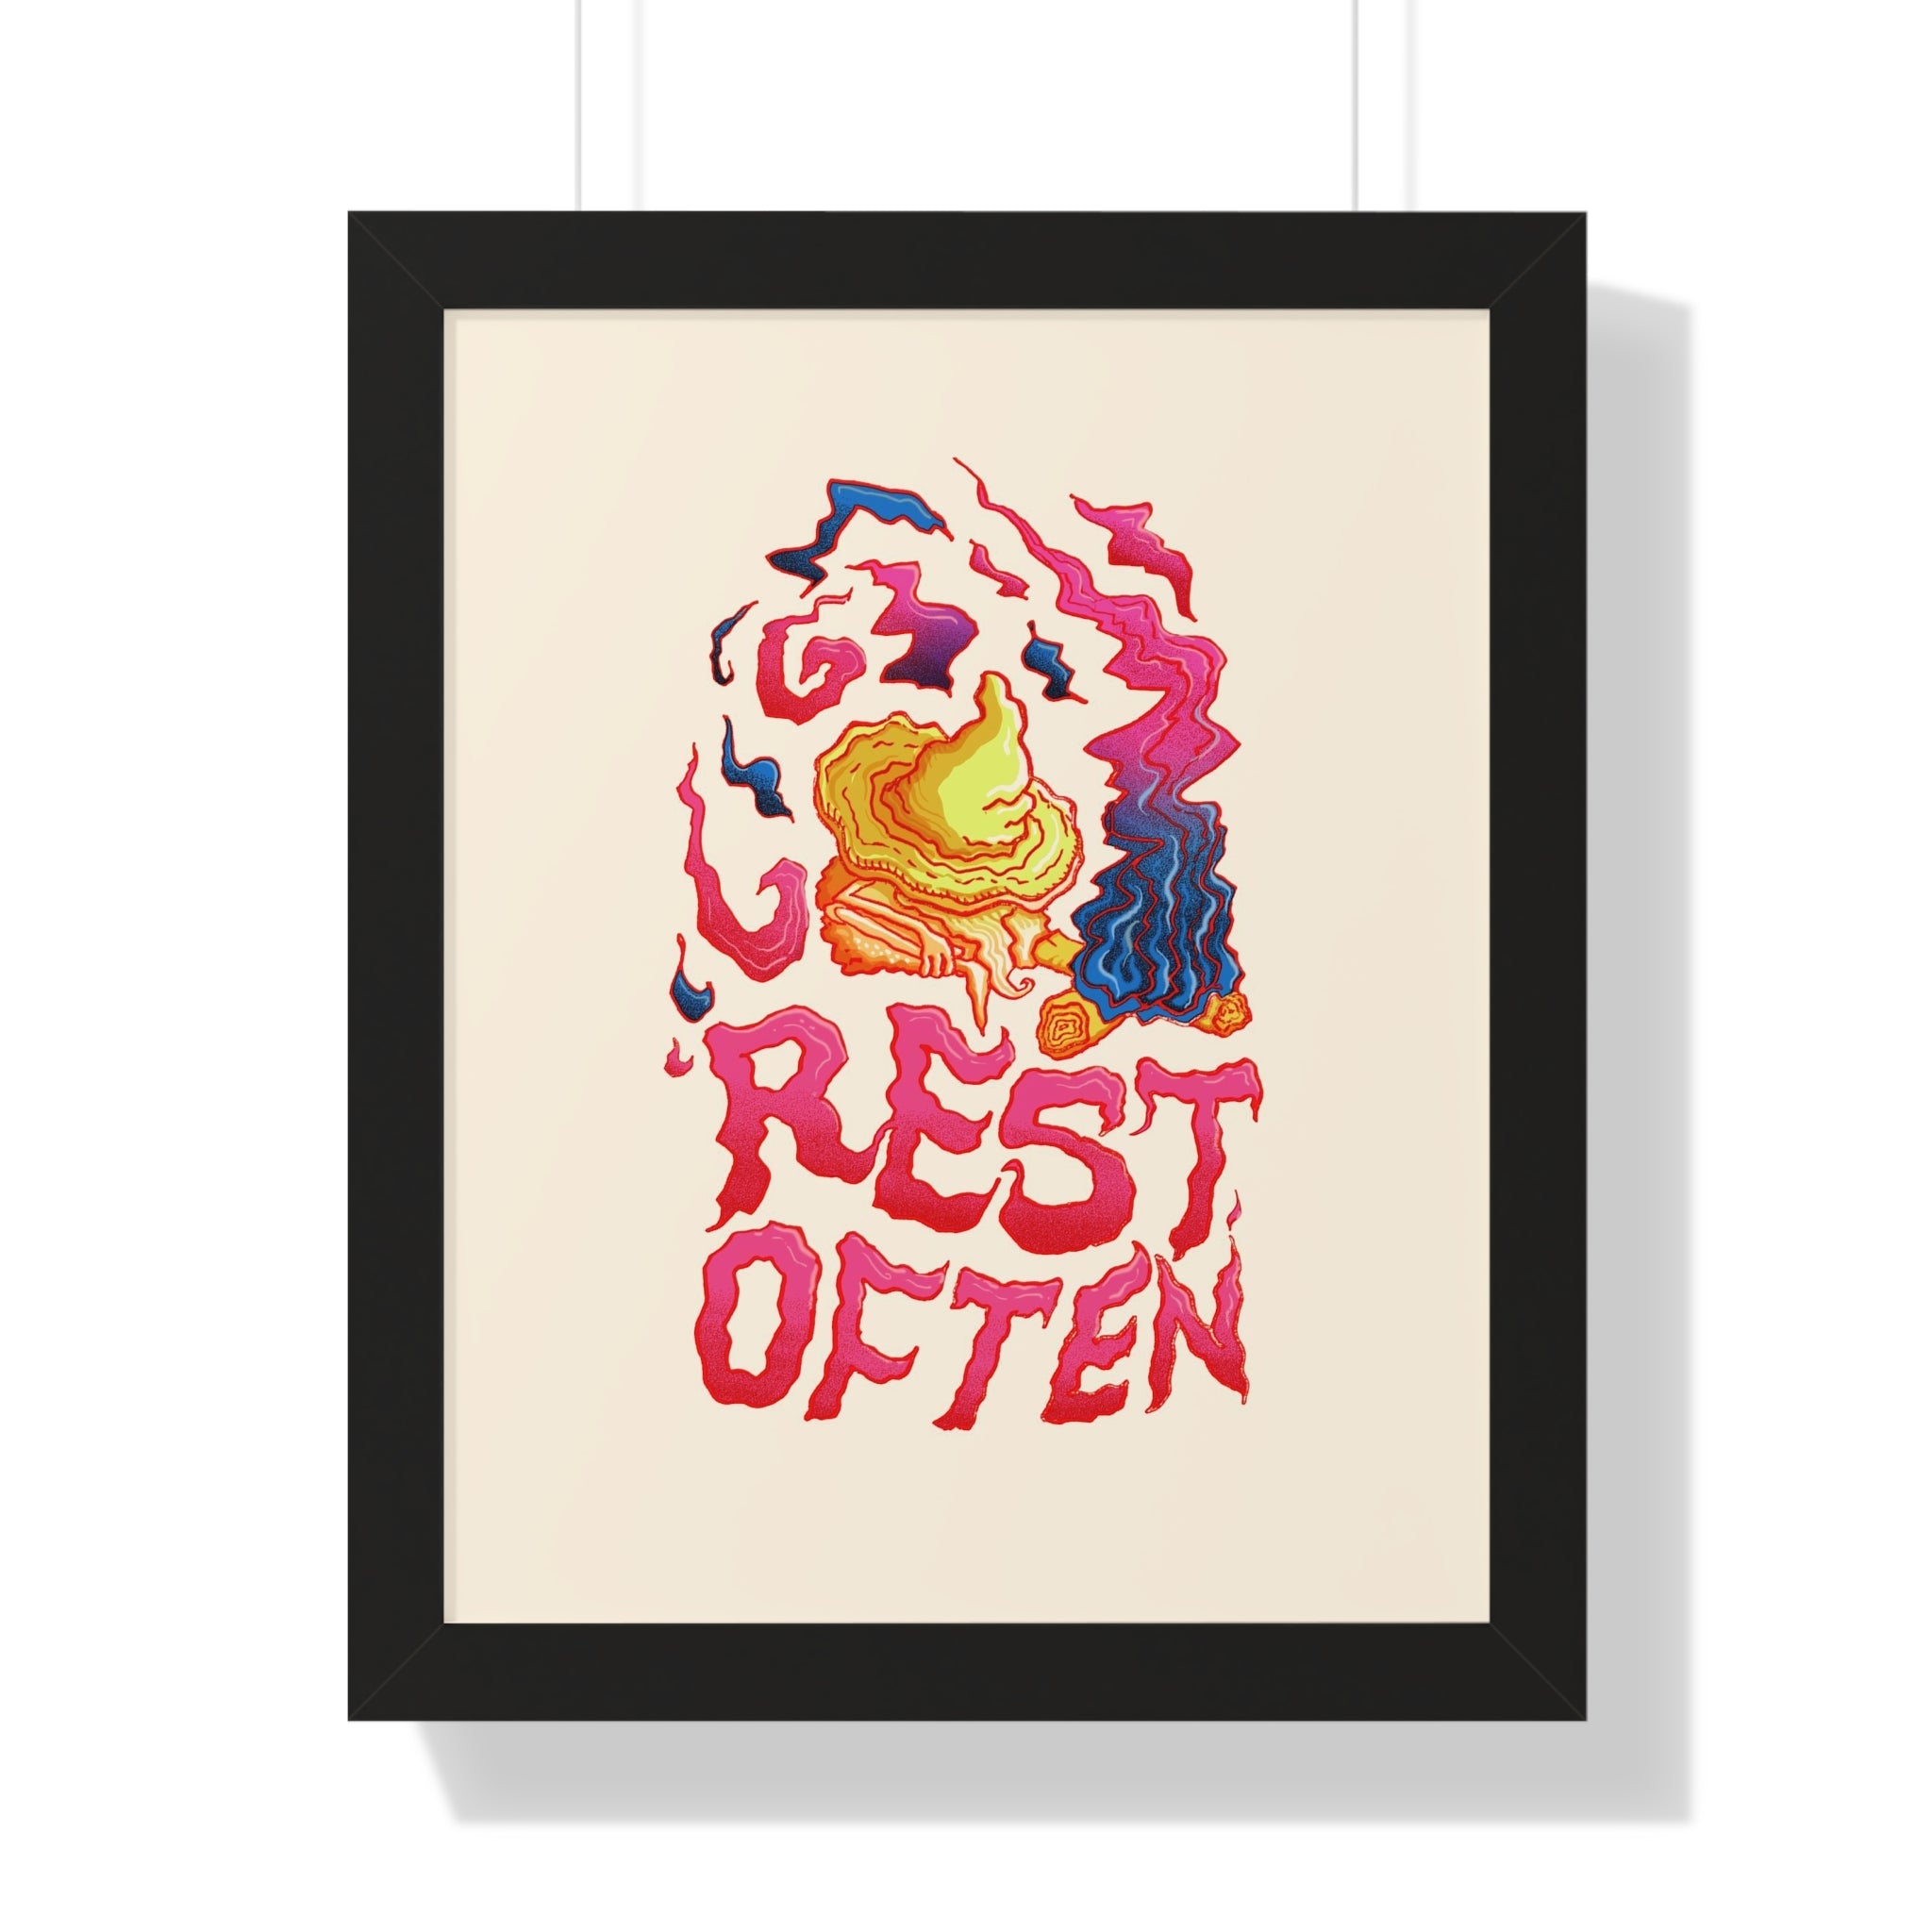 Rest Often | Framed Poster - Poster - Ace of Gnomes - 33306590676336862492